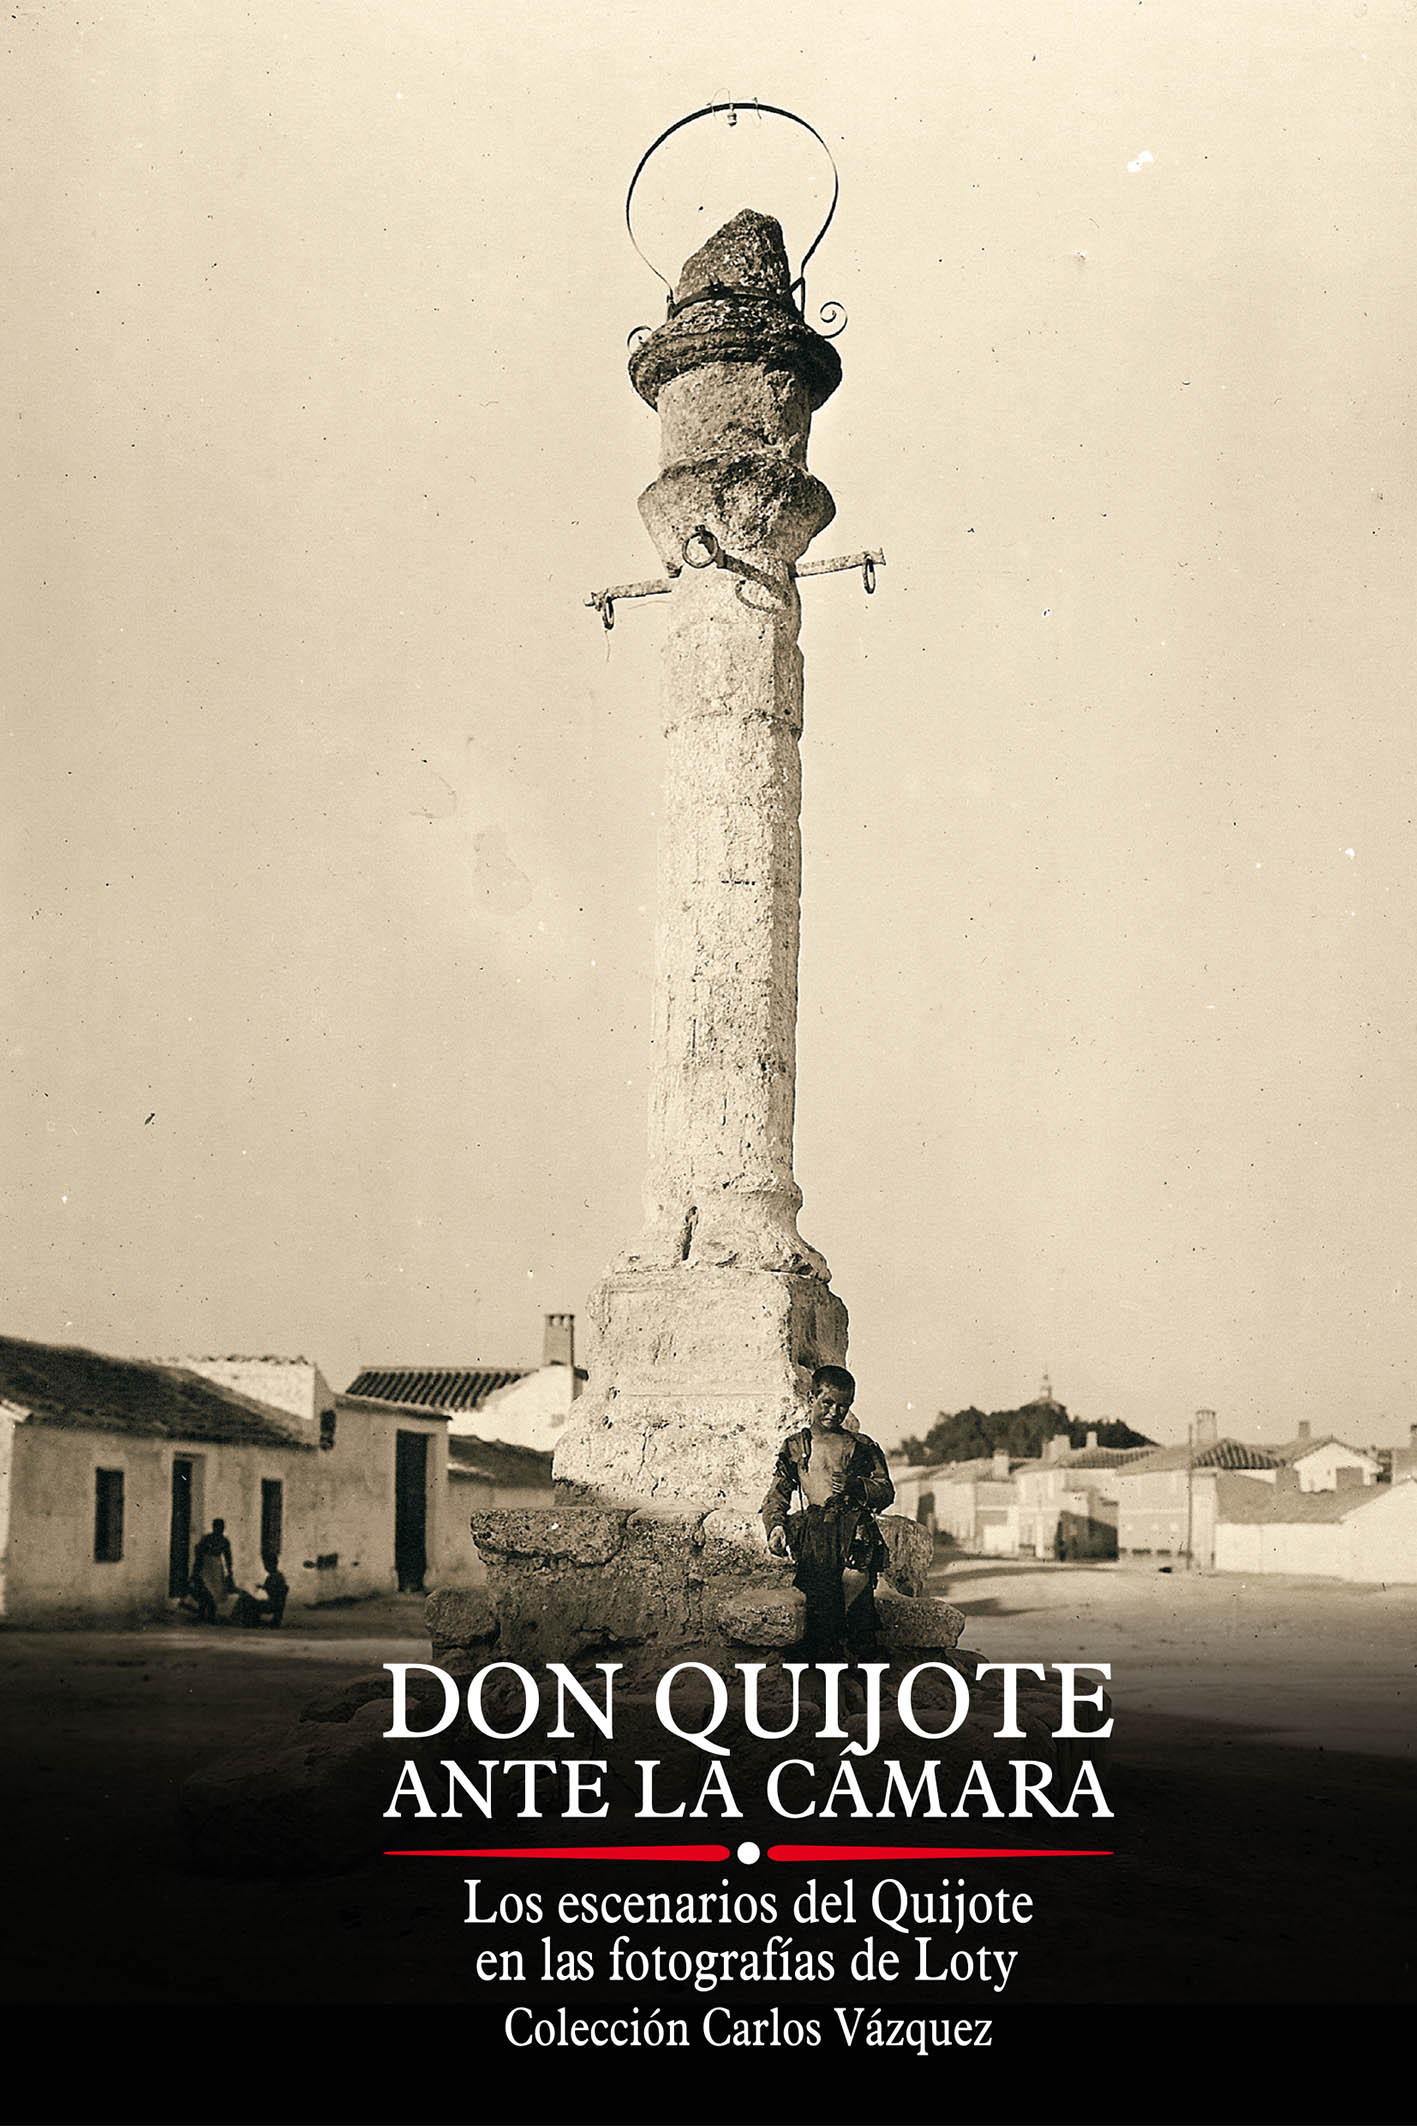 Los escenarios del Quijote fotografiados por Loty en 1926